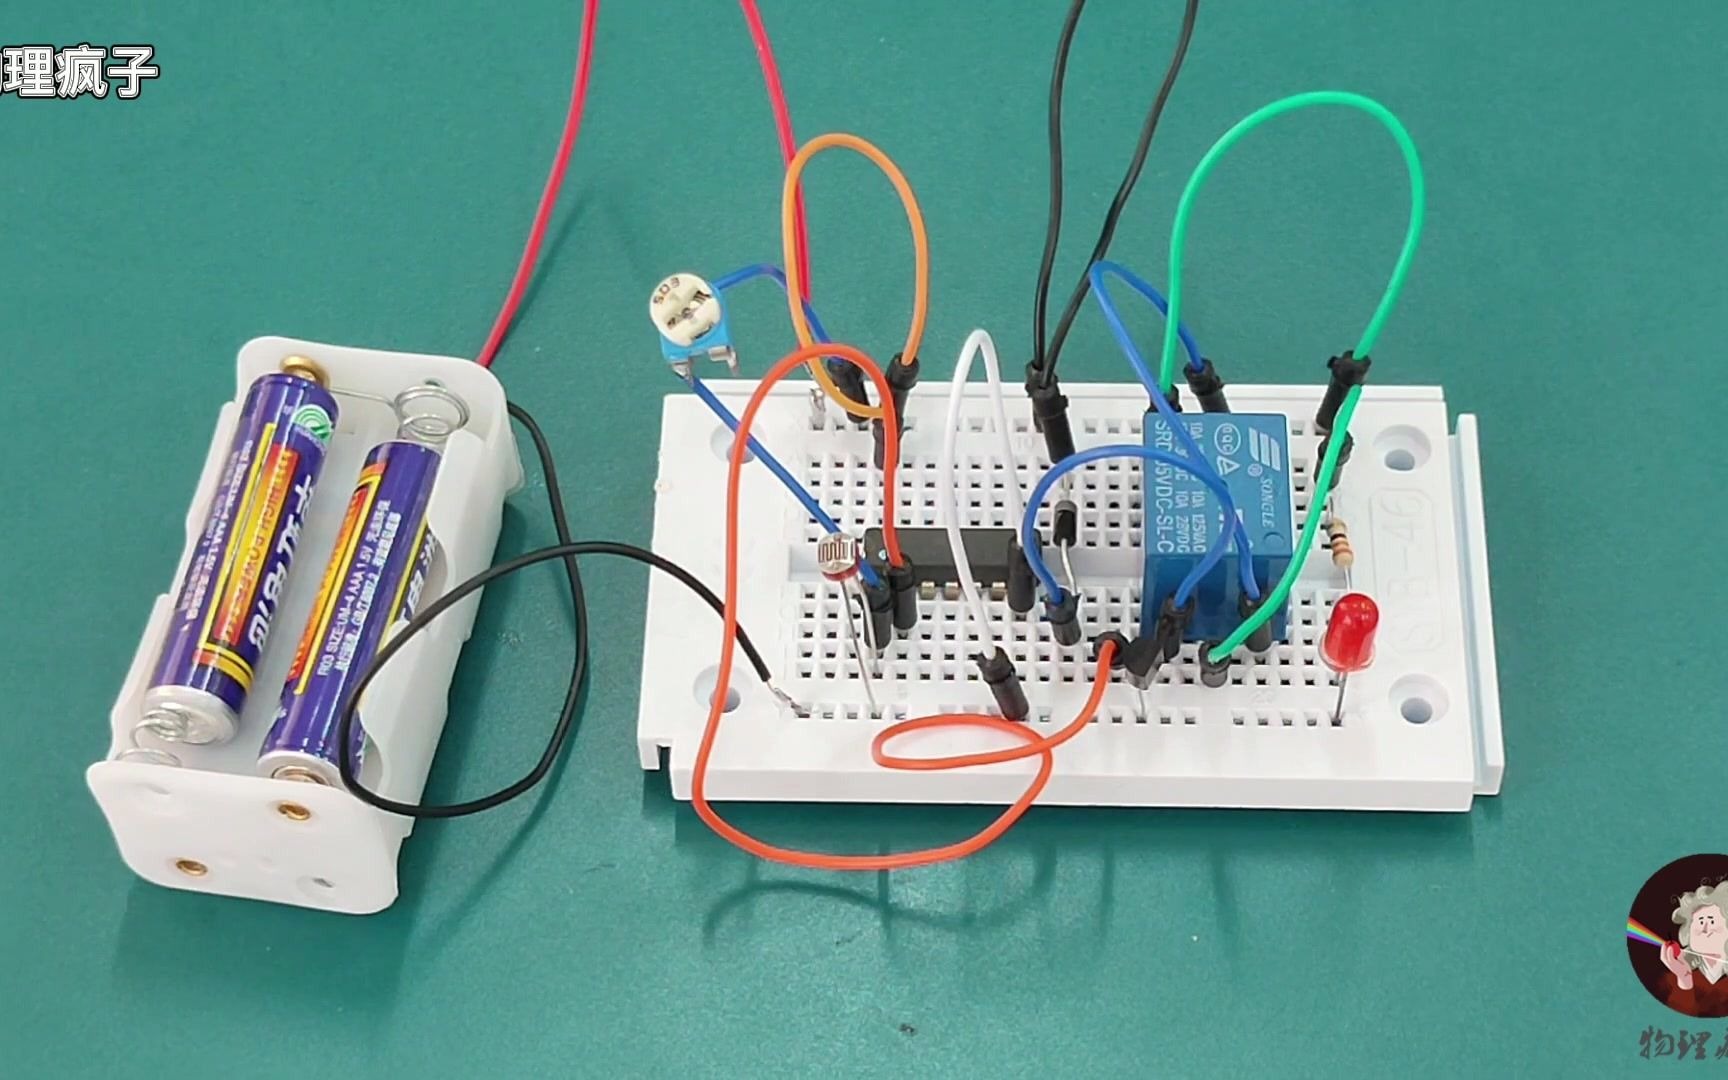 老师做了一个光控路灯电路，就把学生吸引住了，直呼太好玩了，也想做一个